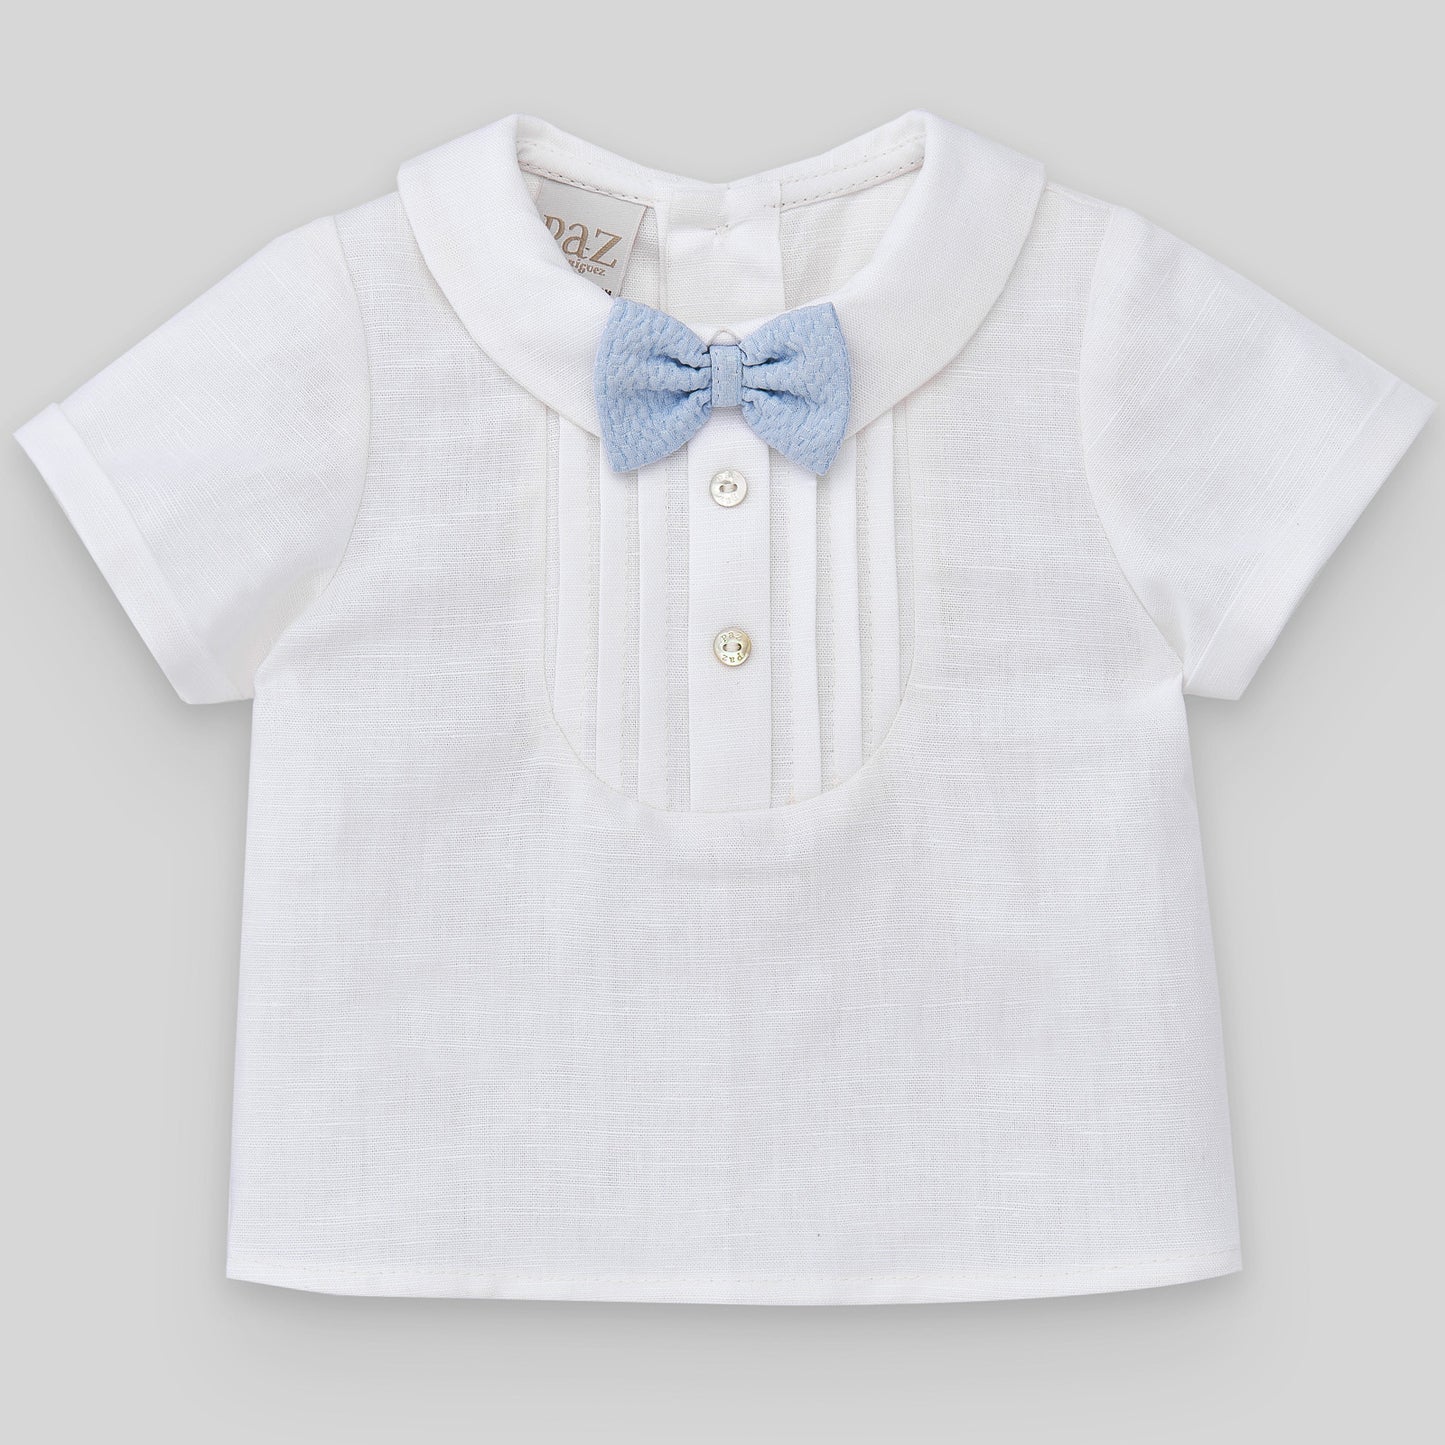 PAZ RODRIGUEZ 3-piece Ceremony Suit Blouse+Shorts+Cardigan Linen Cotton Blend White-Sky Blue